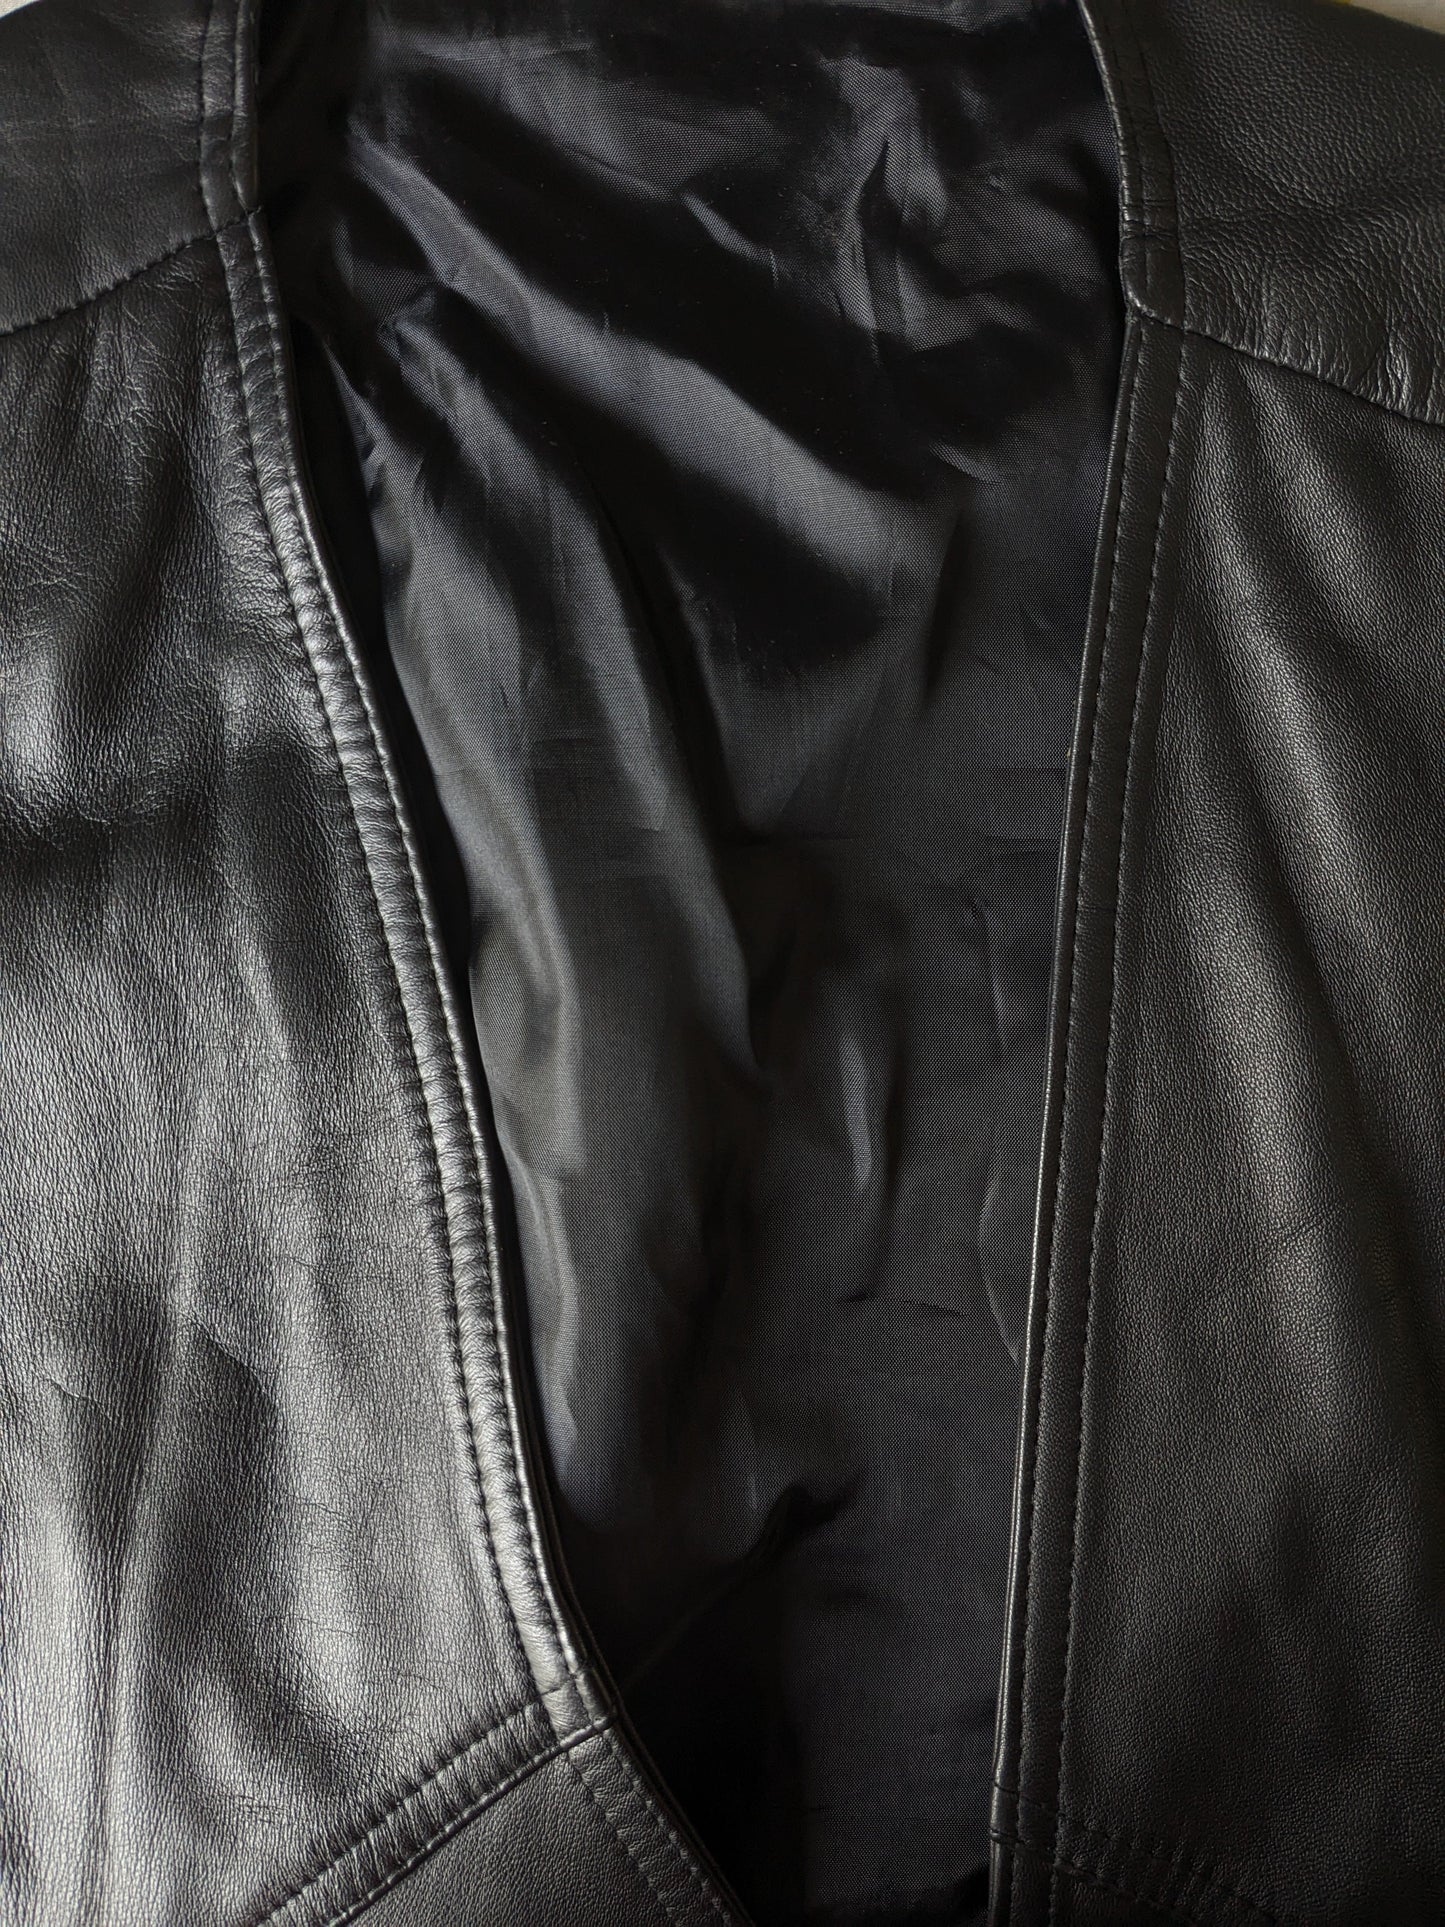 Giutante per motociclisti in pelle resistente con applicazioni in pizzo e fibbie. Colorato nero. Dimensione 3xl / xxxl.